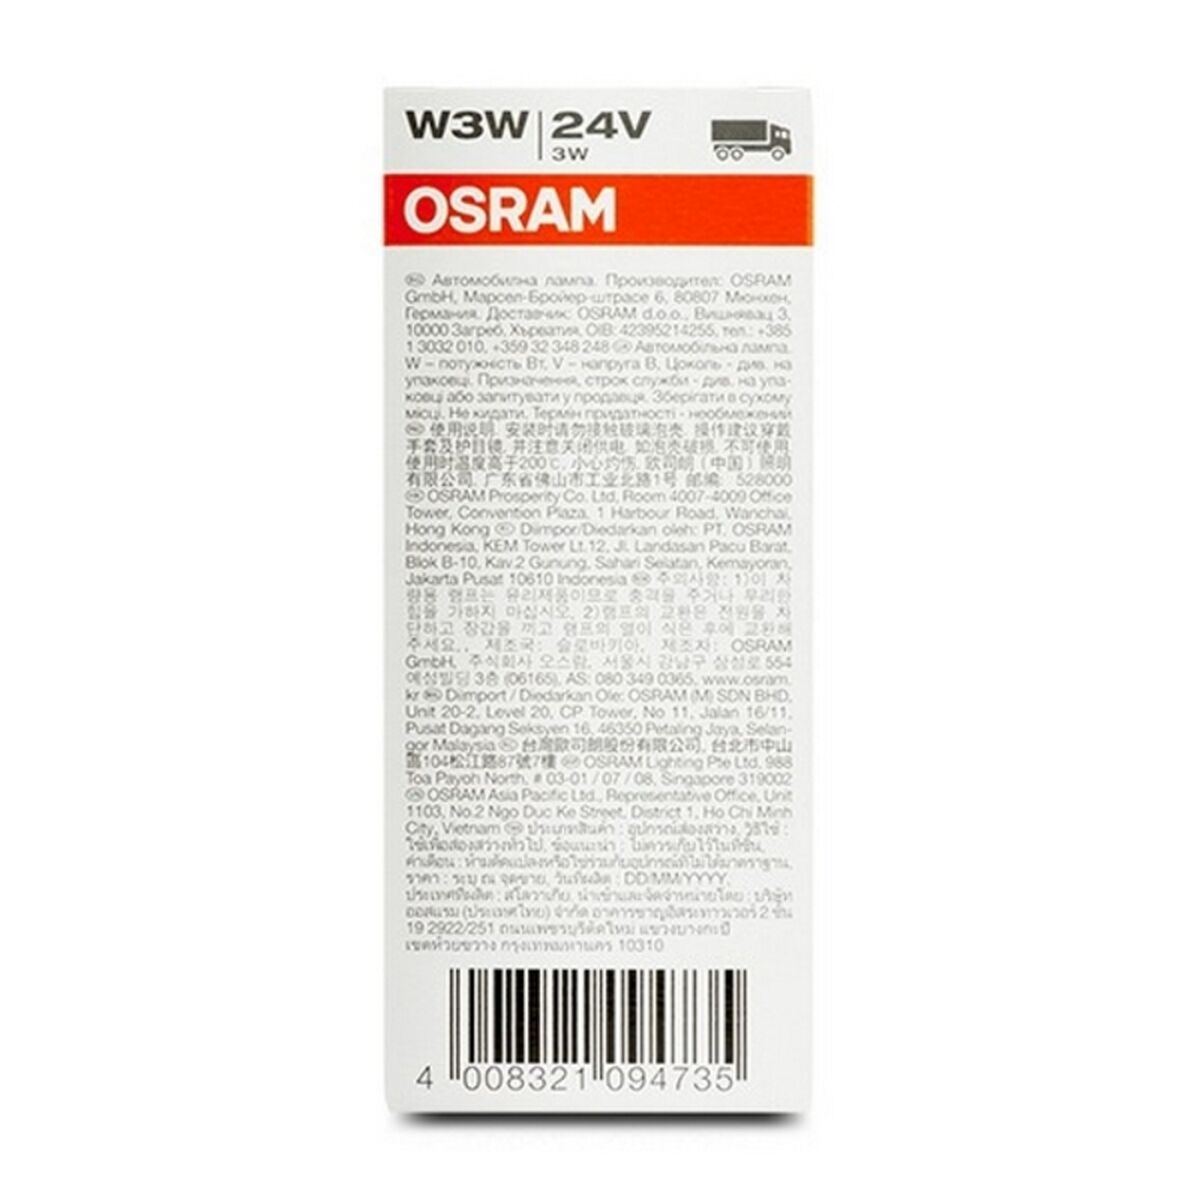 Autoglühbirne Osram W3W 24V 3W (10 pcs)